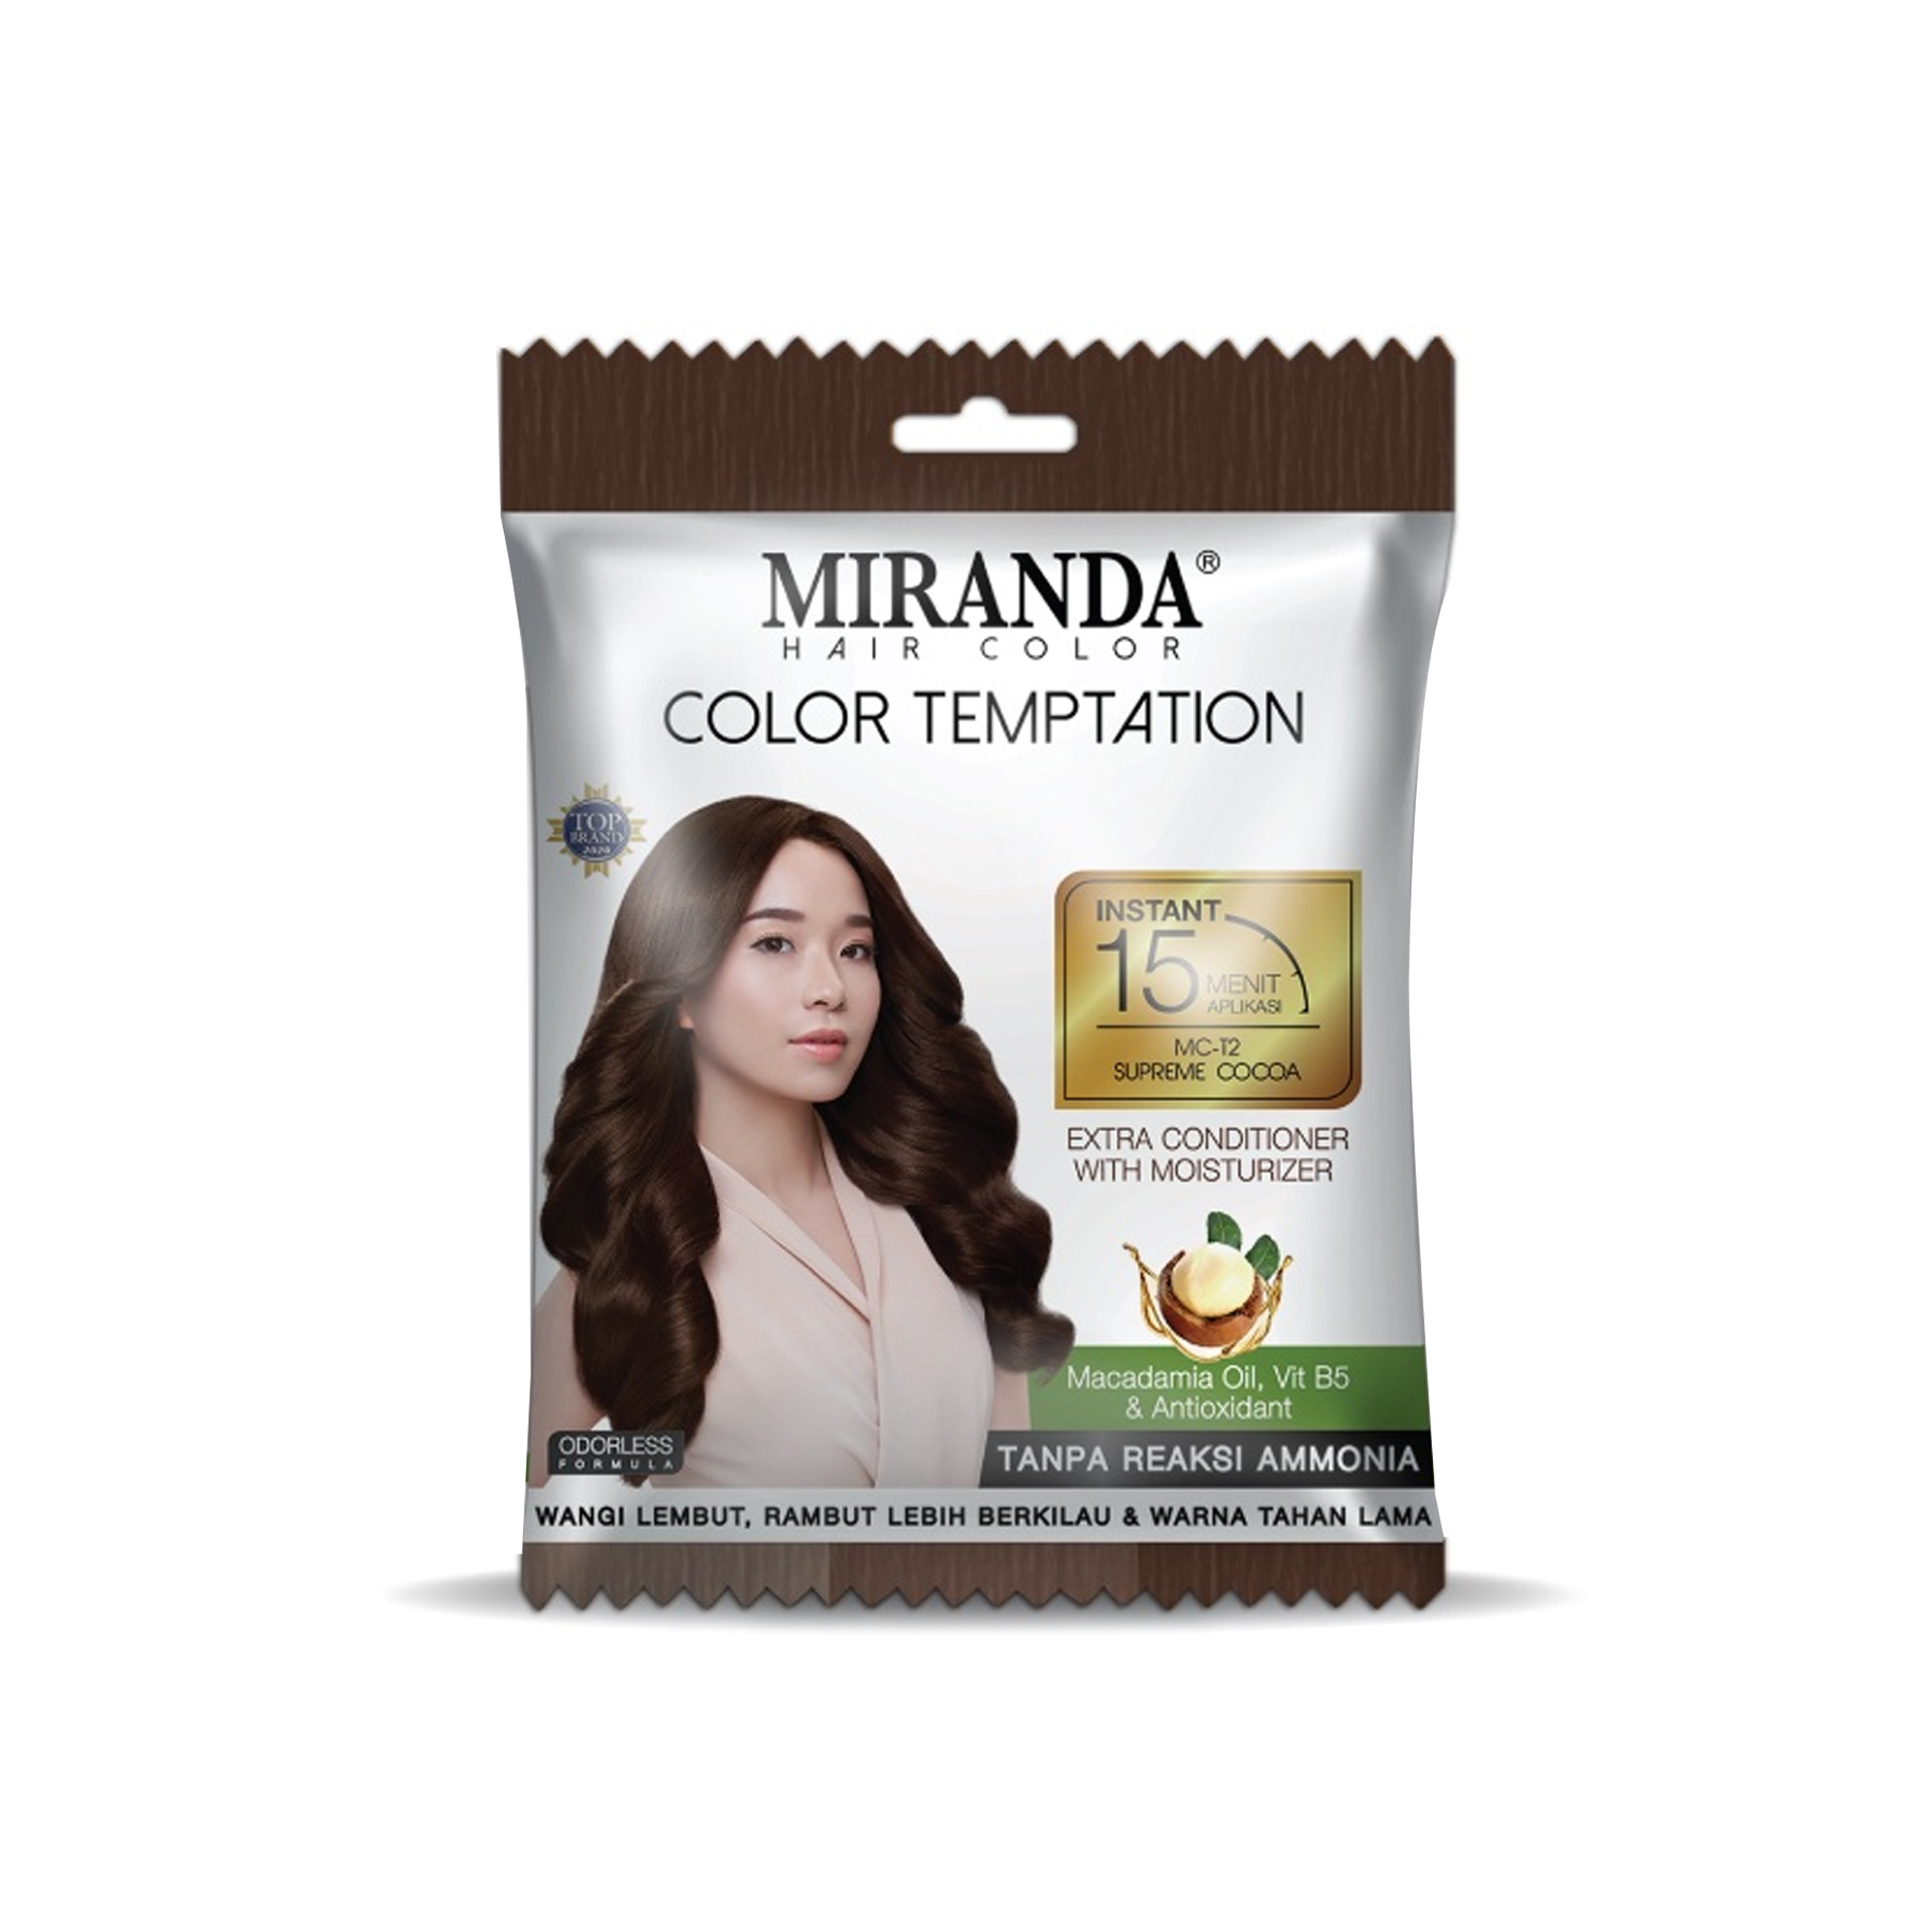 Miranda Hair Color Temptation MC T2 Supreme Cocoa 20 ml